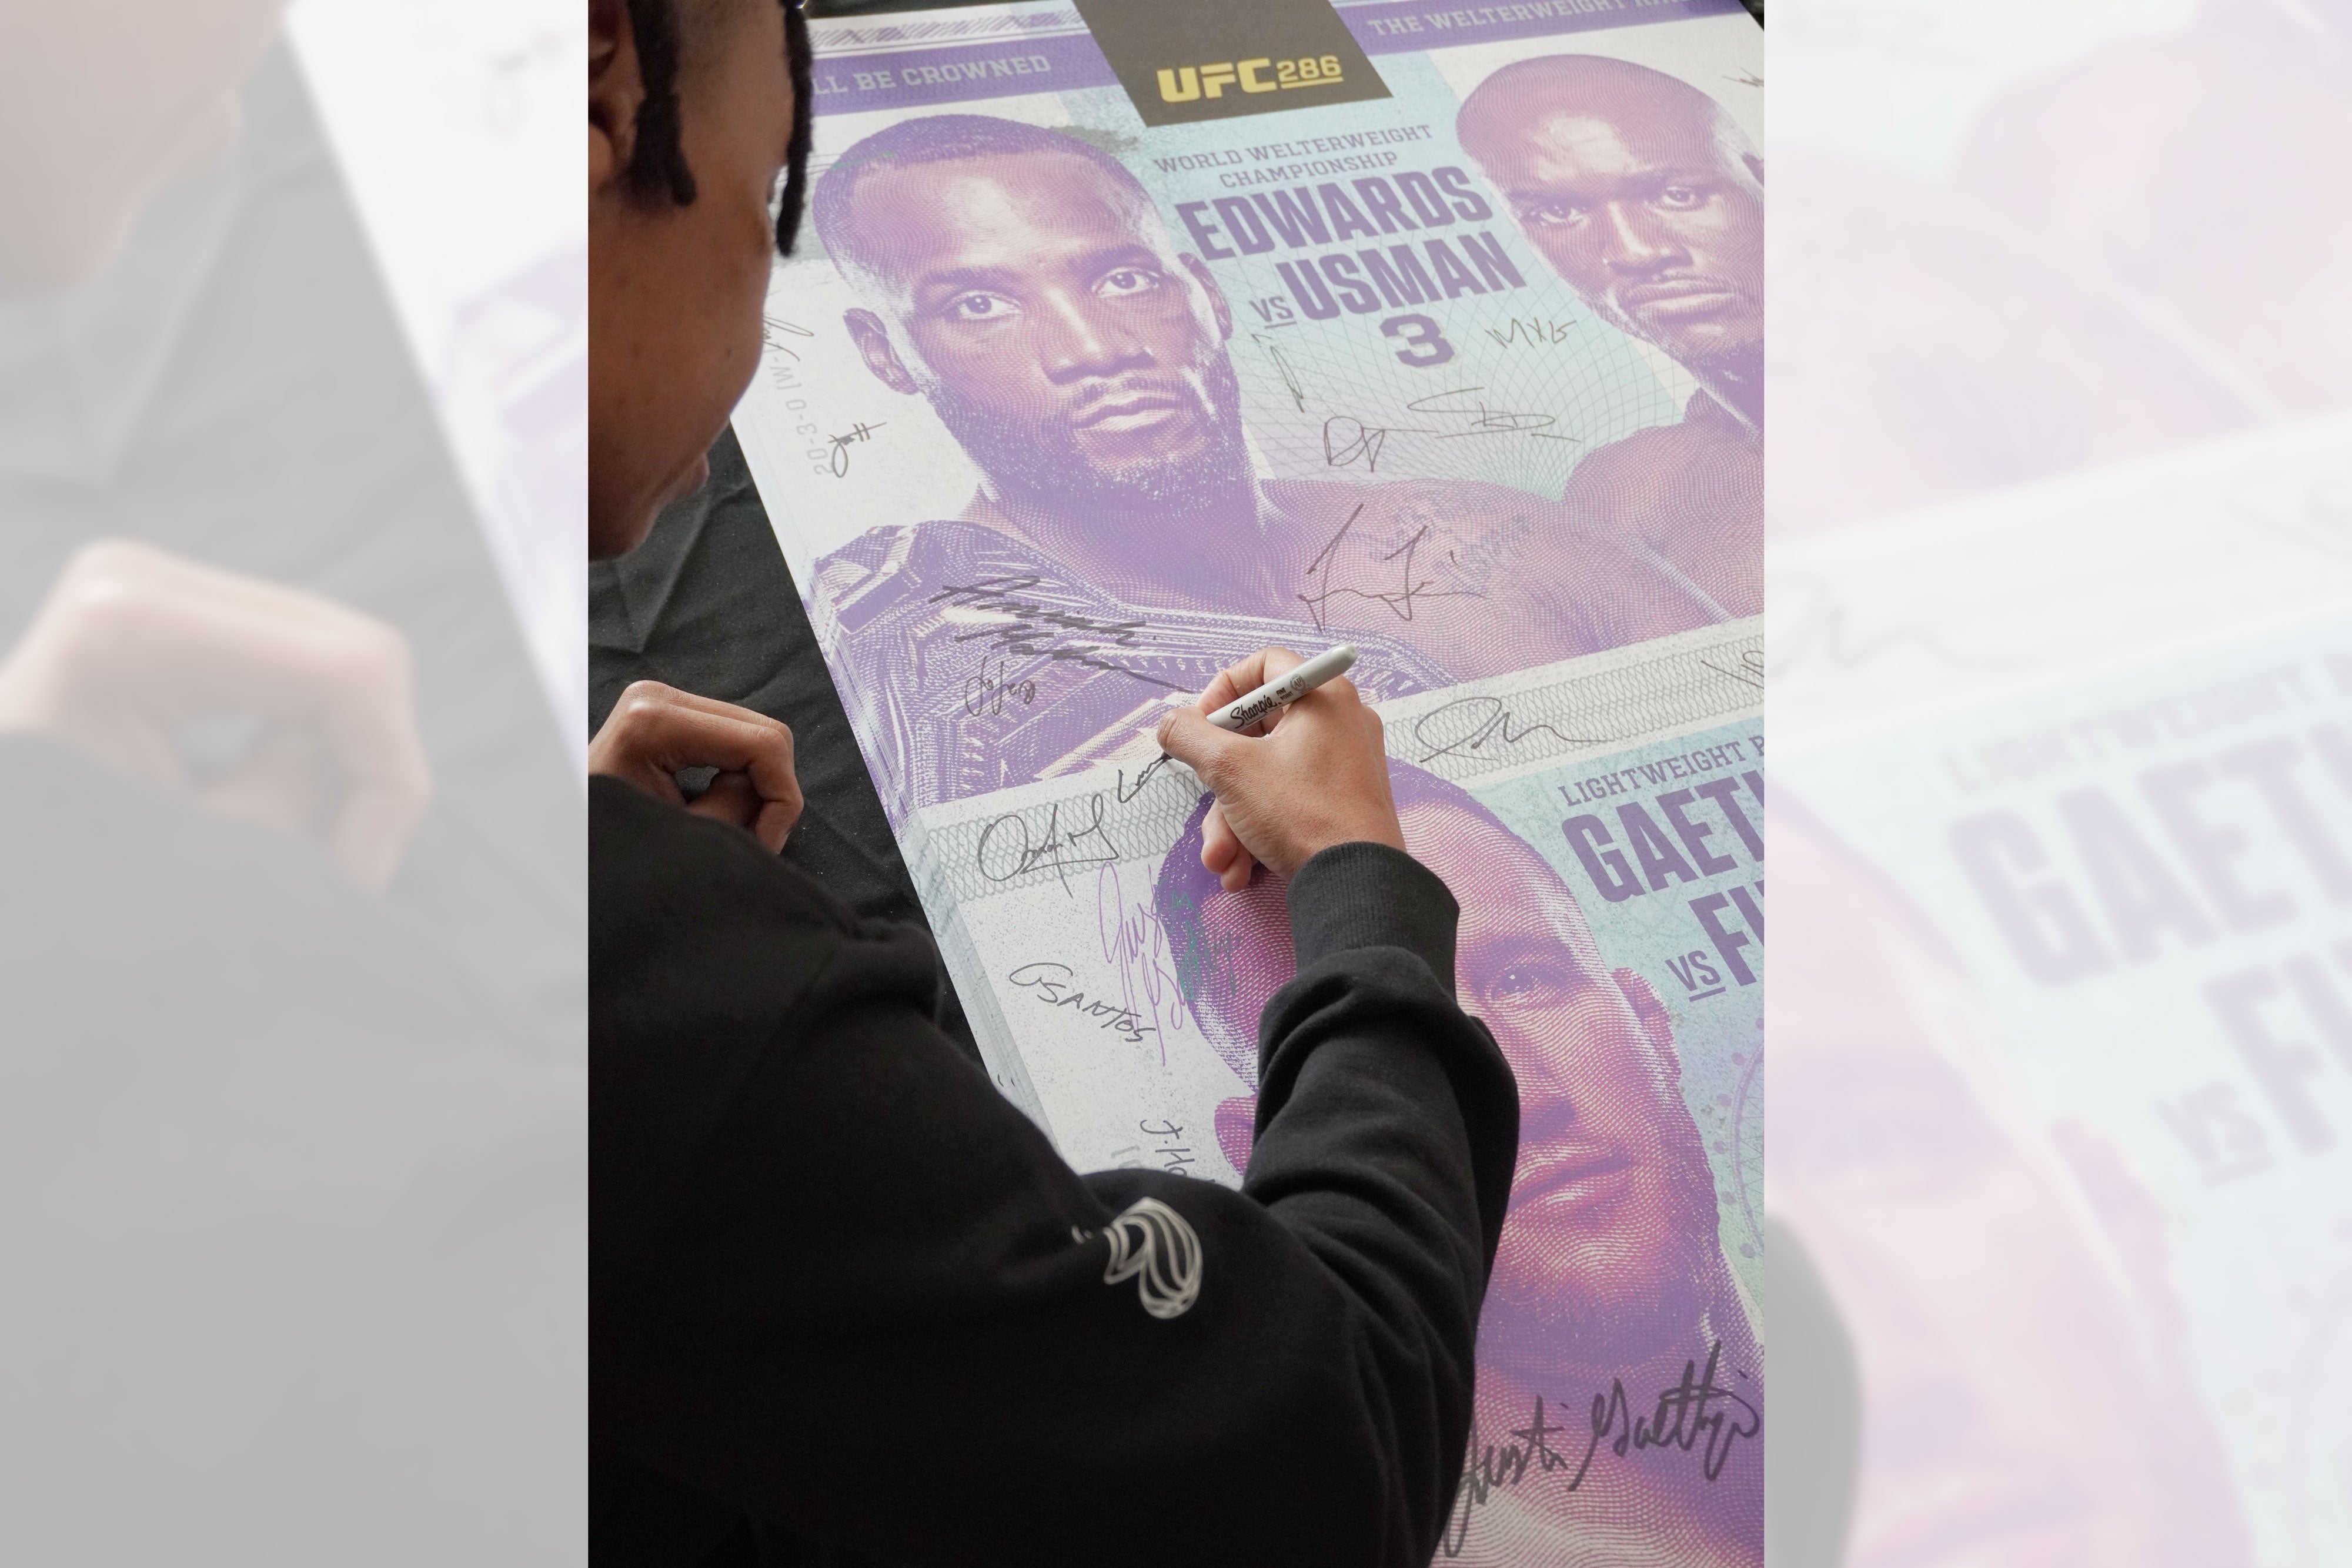 UFC 286: Edwards vs Usman 3 Autographed Event Poster - Last Chance